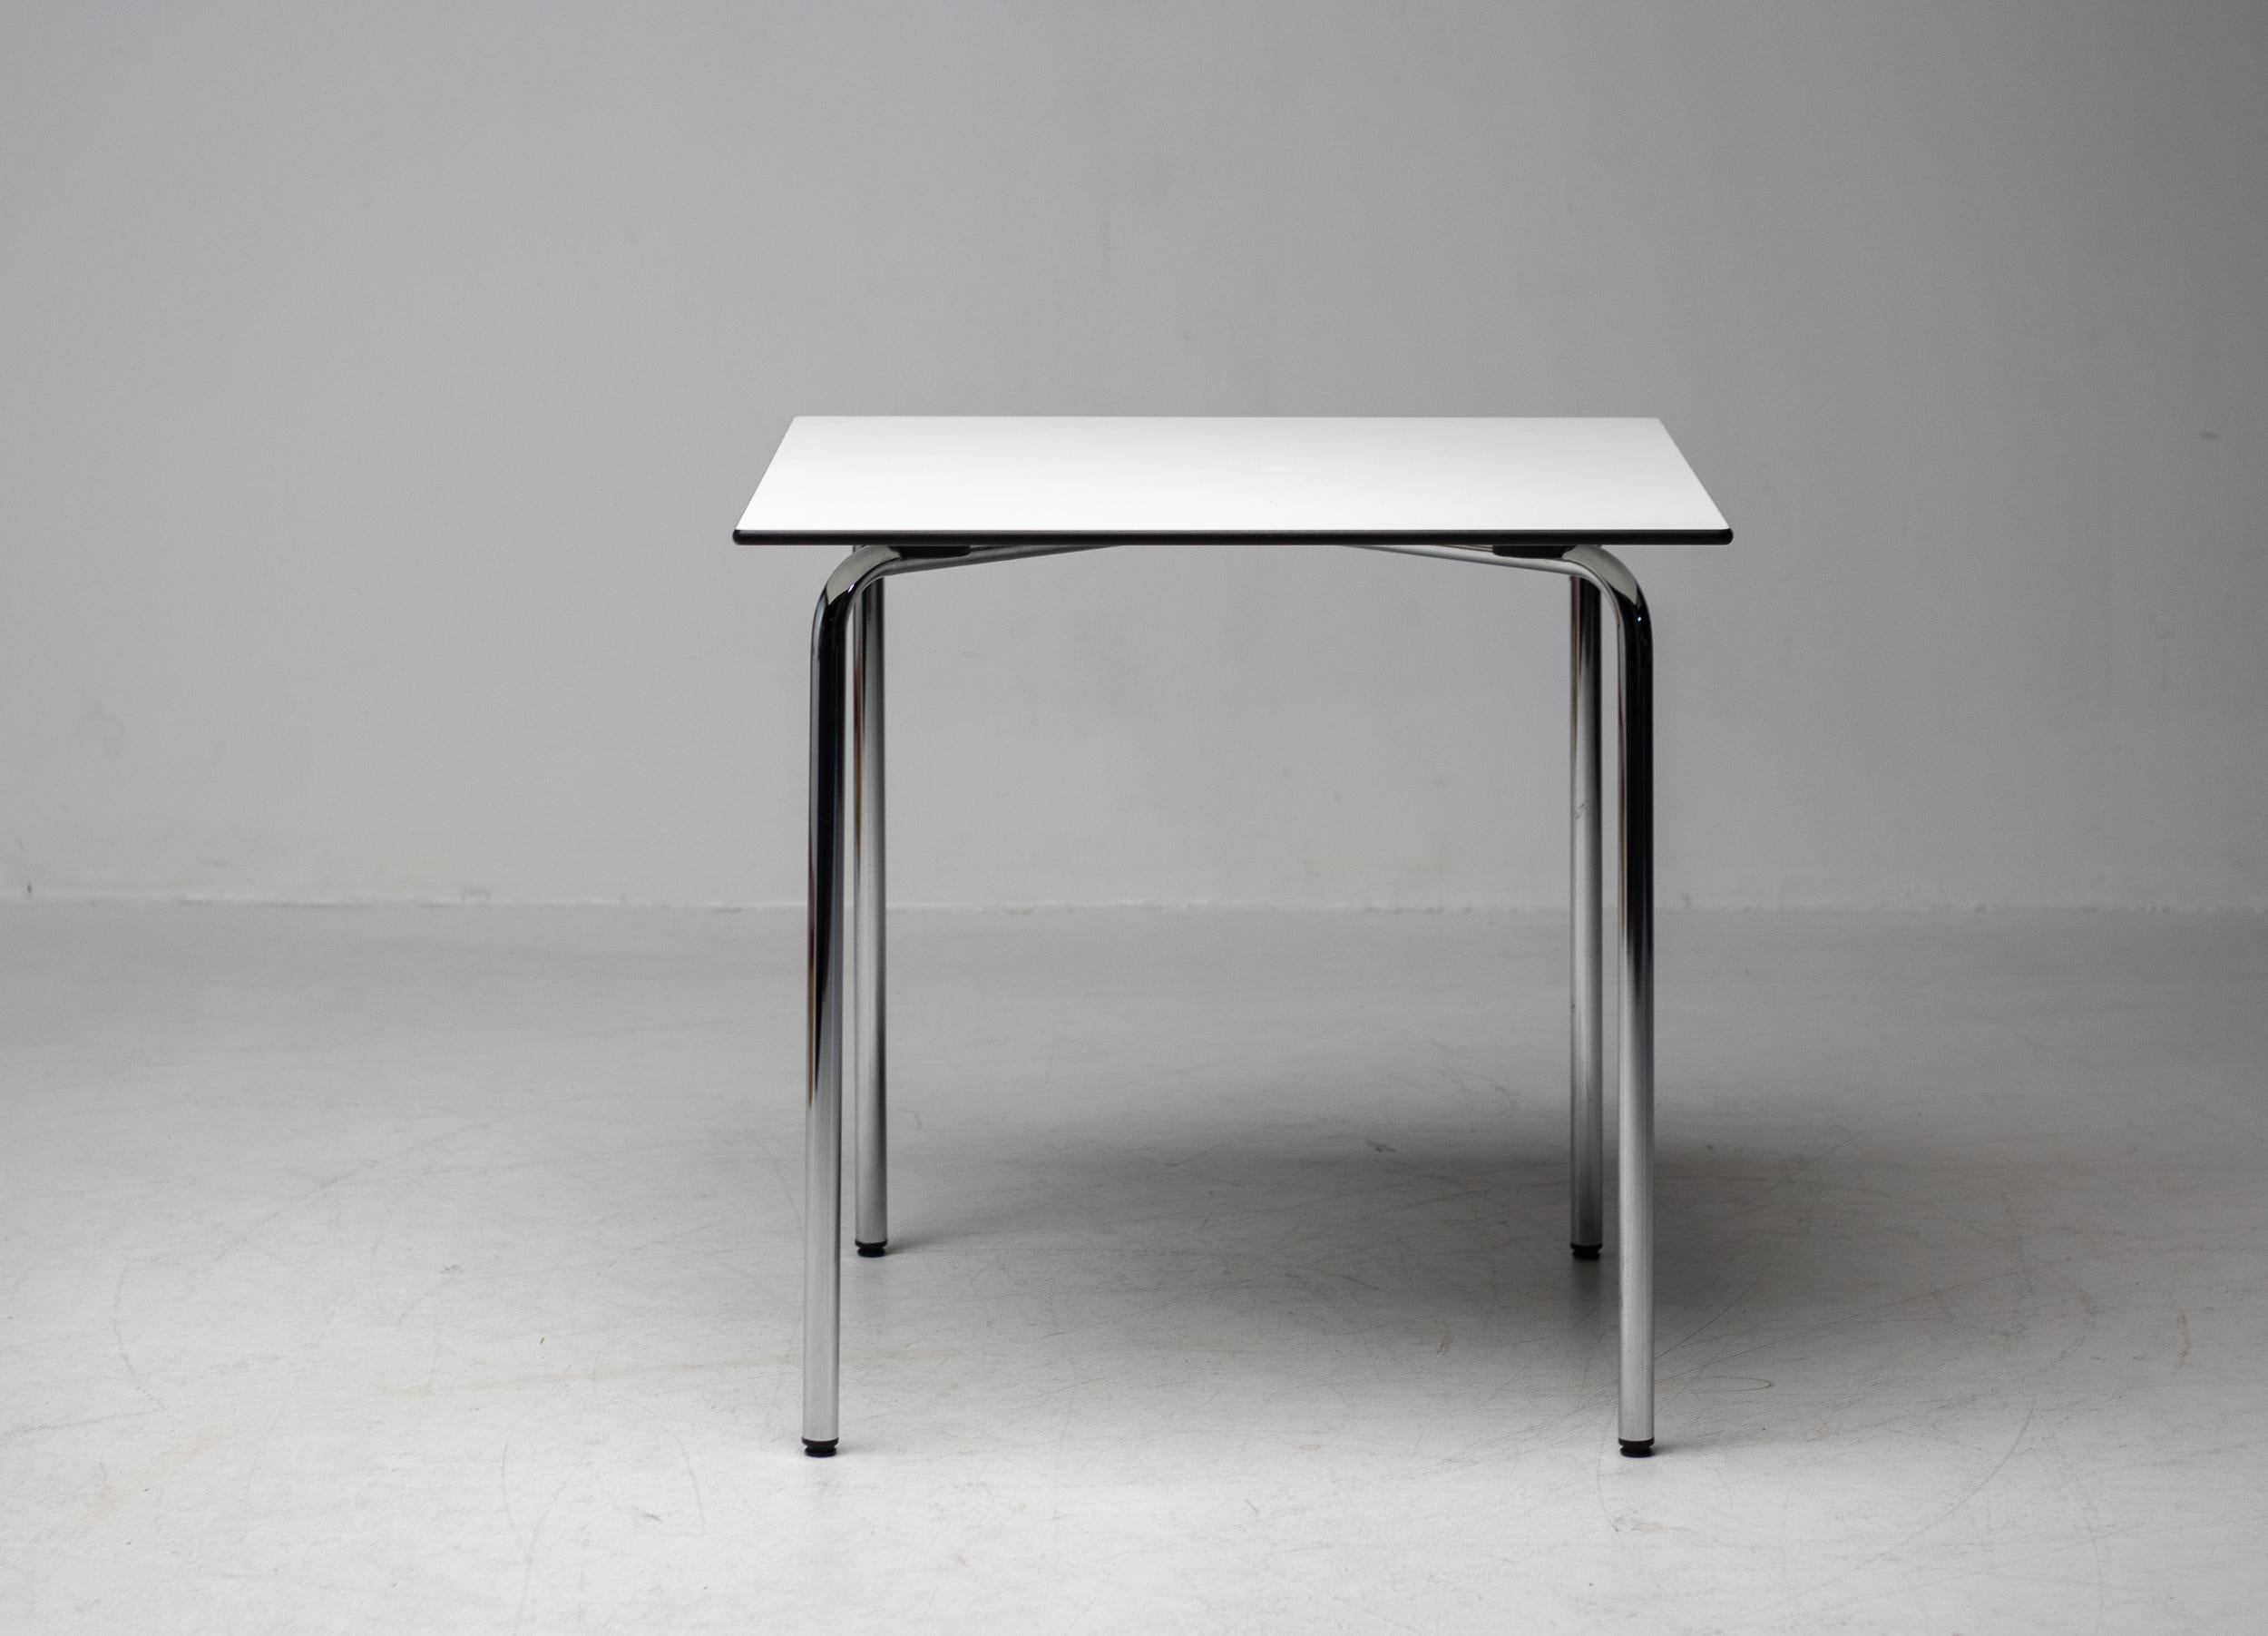 Der HAL Table wurde von Jasper Morrison als Ergänzungstisch zum HAL Chair entworfen.
Die quadratische Tischplatte ist besonders robust. Mit seinem verchromten Fuß passt der Tisch perfekt zu den HAL Chair Modellen. MATERIALIEN; Tischplatte: